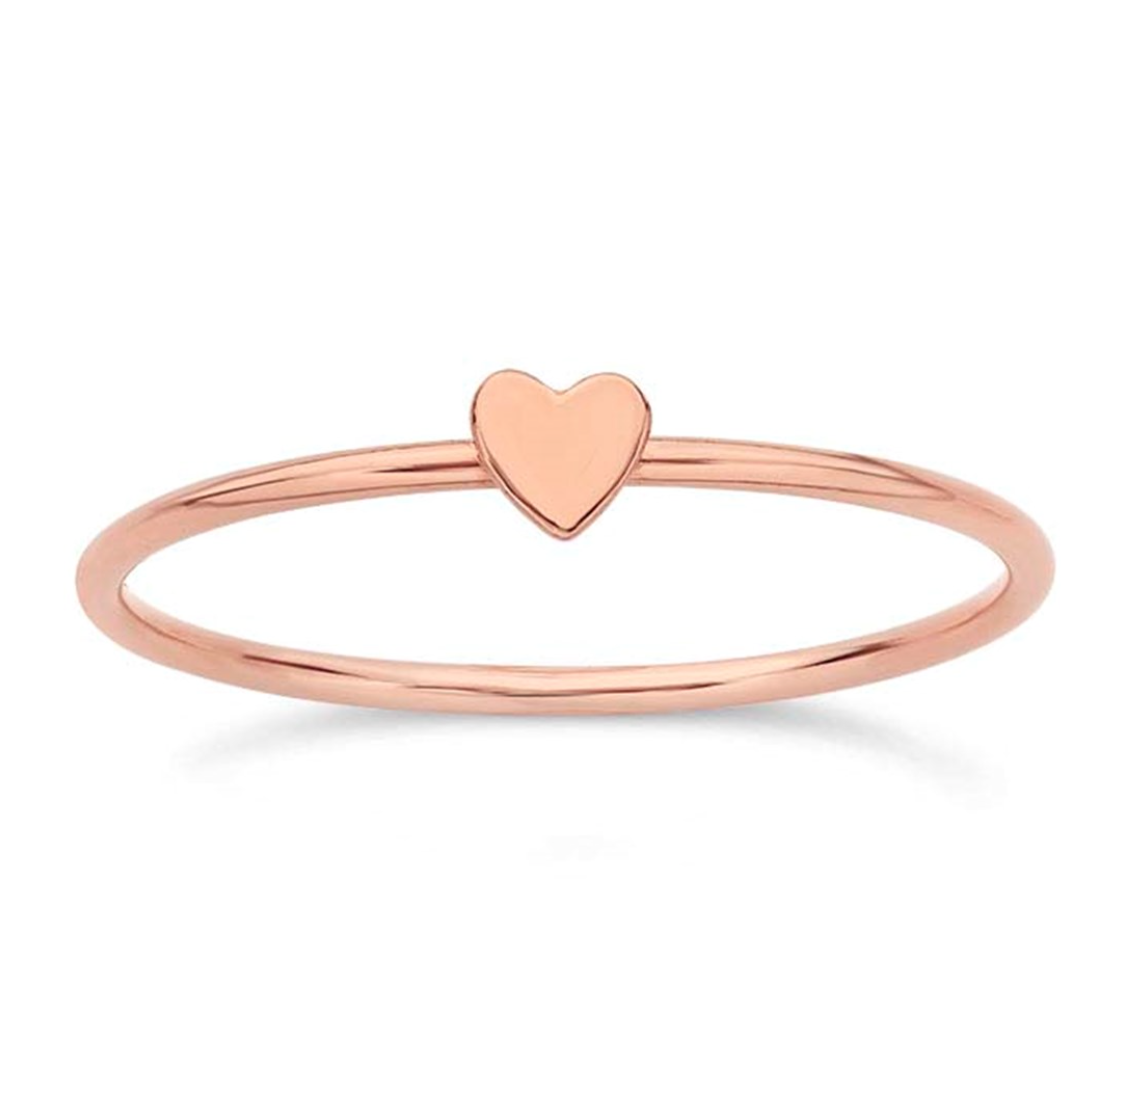 Mini Heart Ring - Going Golden